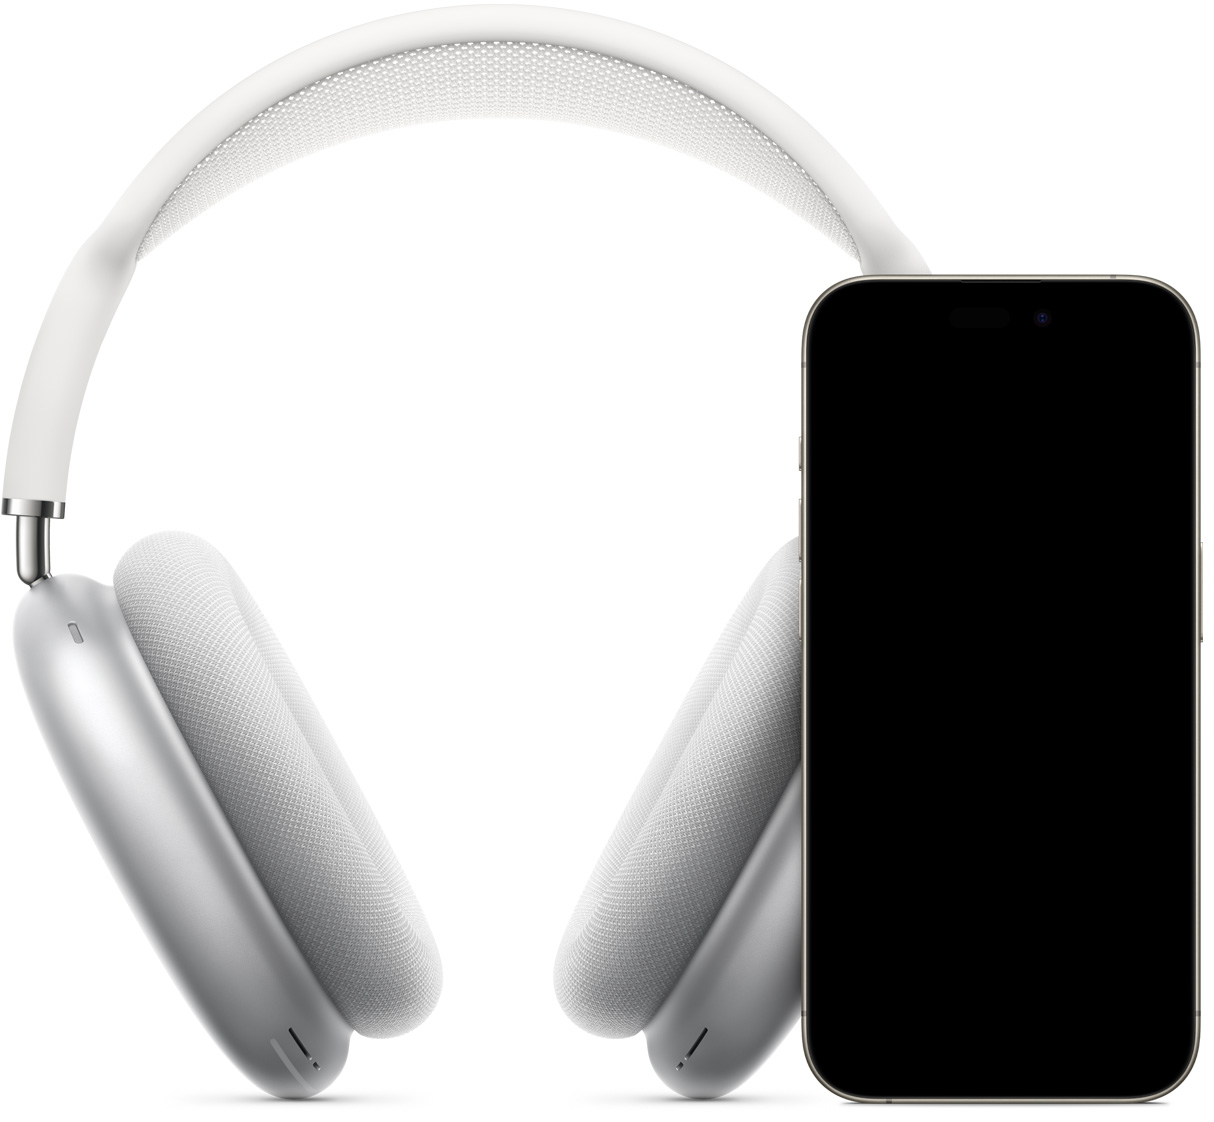 Навушники AirPods Max сріблястого кольору позаду iPhone із зображенням функції миттєвого підключення; на екрані показана кнопка «Підʼєднати», натискаючи яку можна підключити AirPods Max.